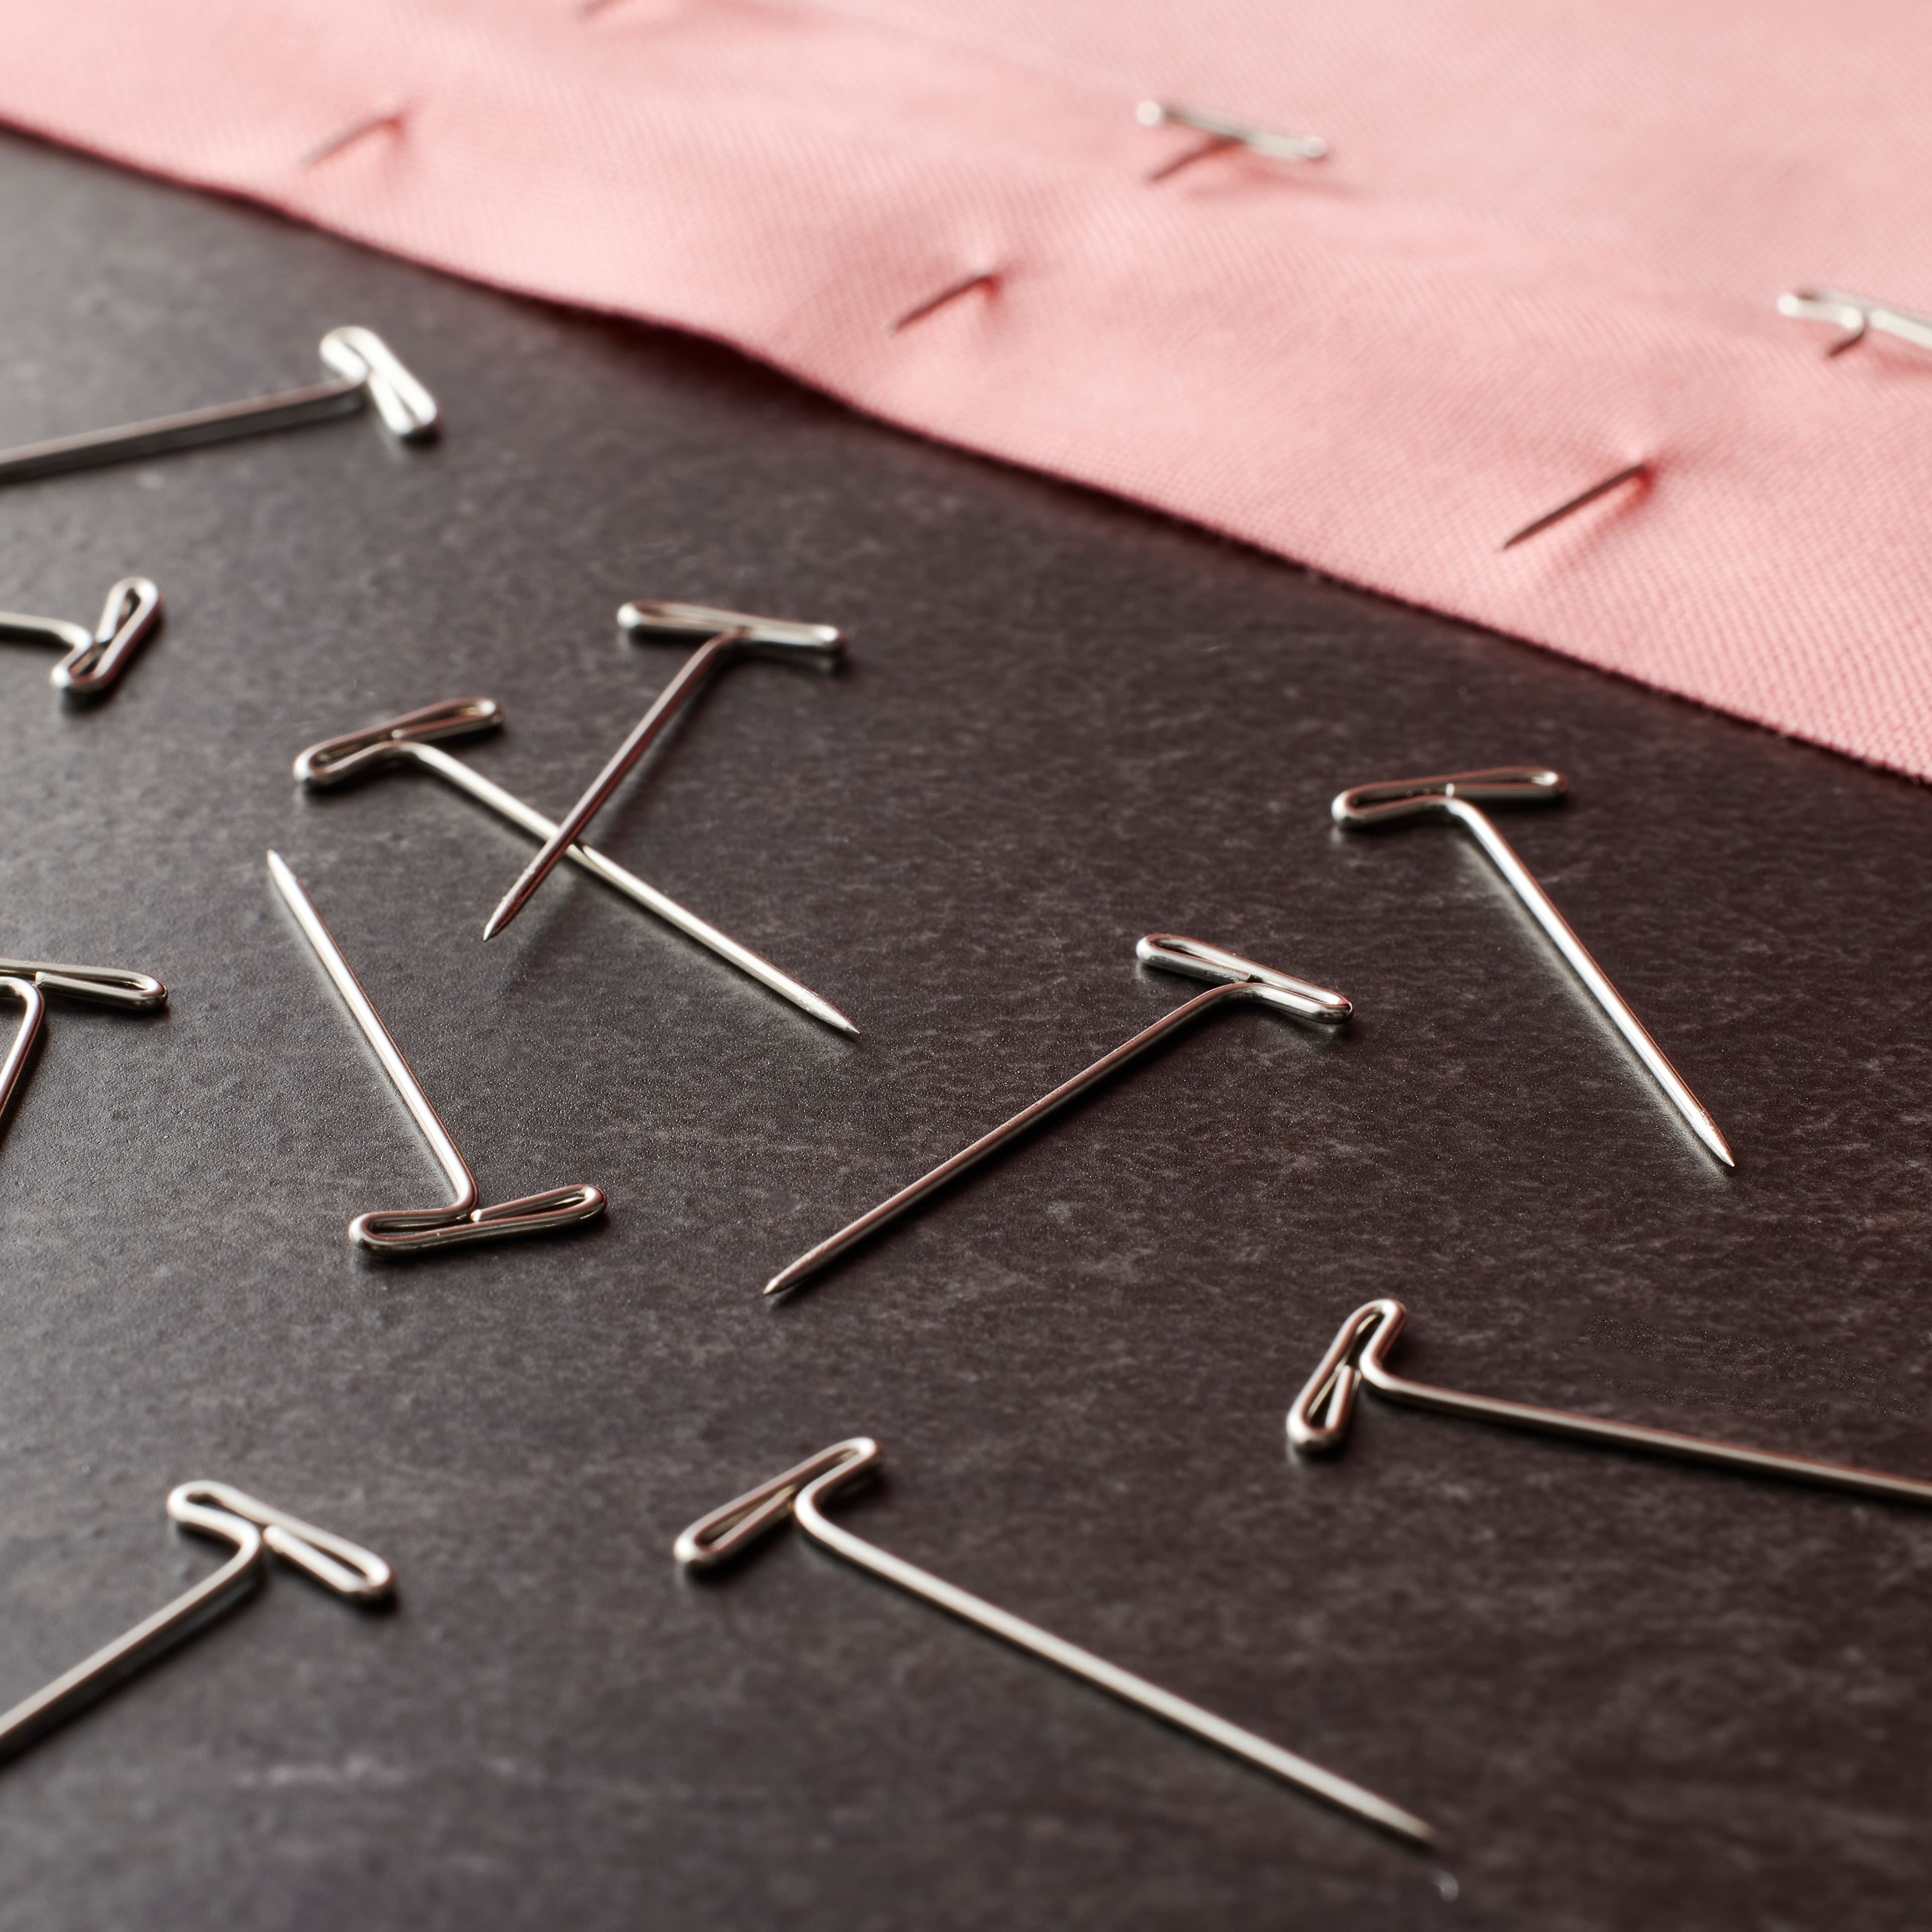 Loops & Threads™ Pre-Threaded Needle Kit